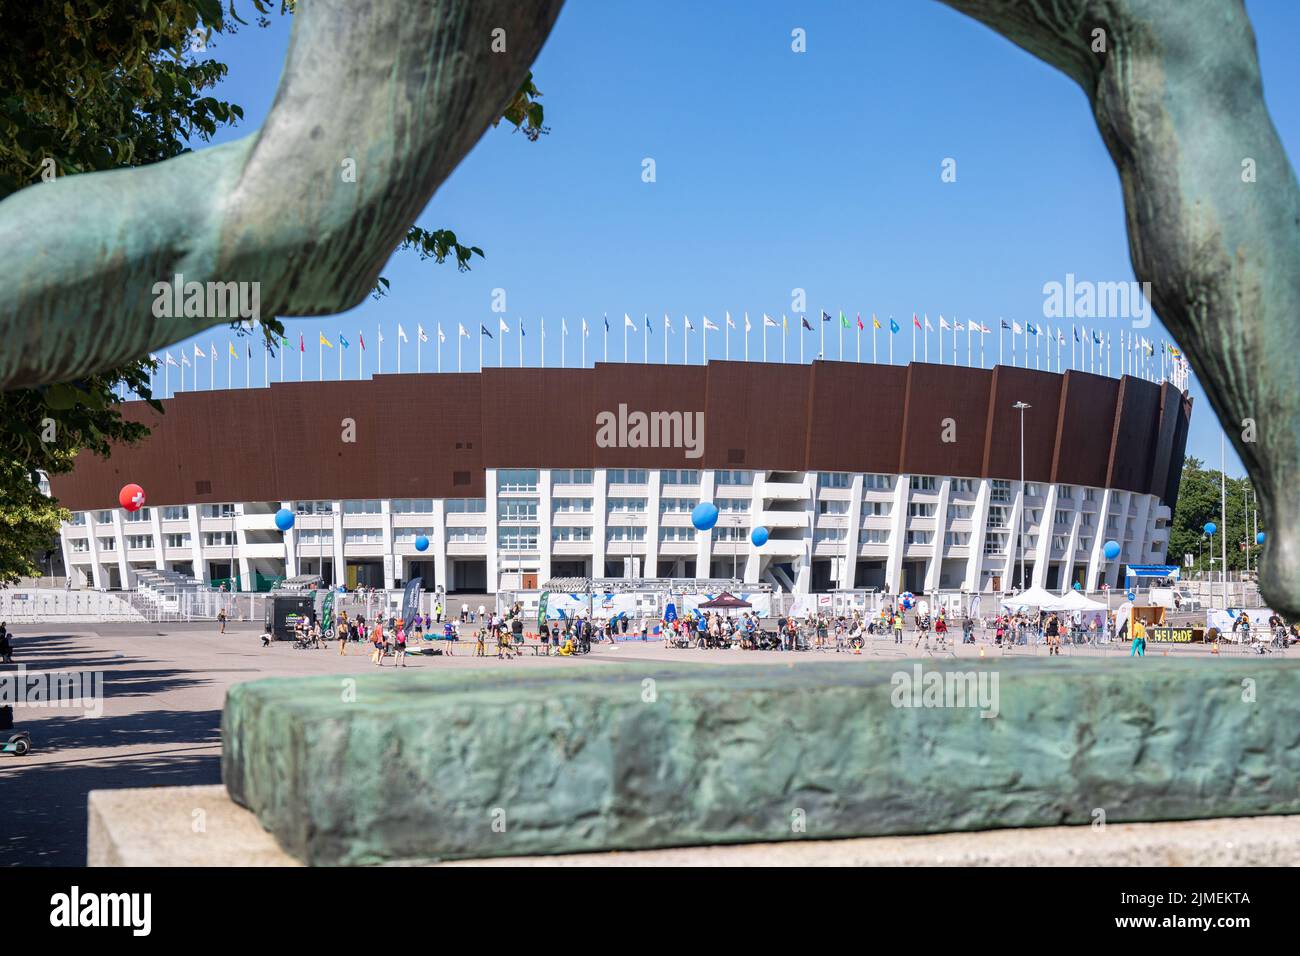 Olympic Stadium between Paavo Nurmi statue legs in Helsinki, Finland Stock Photo